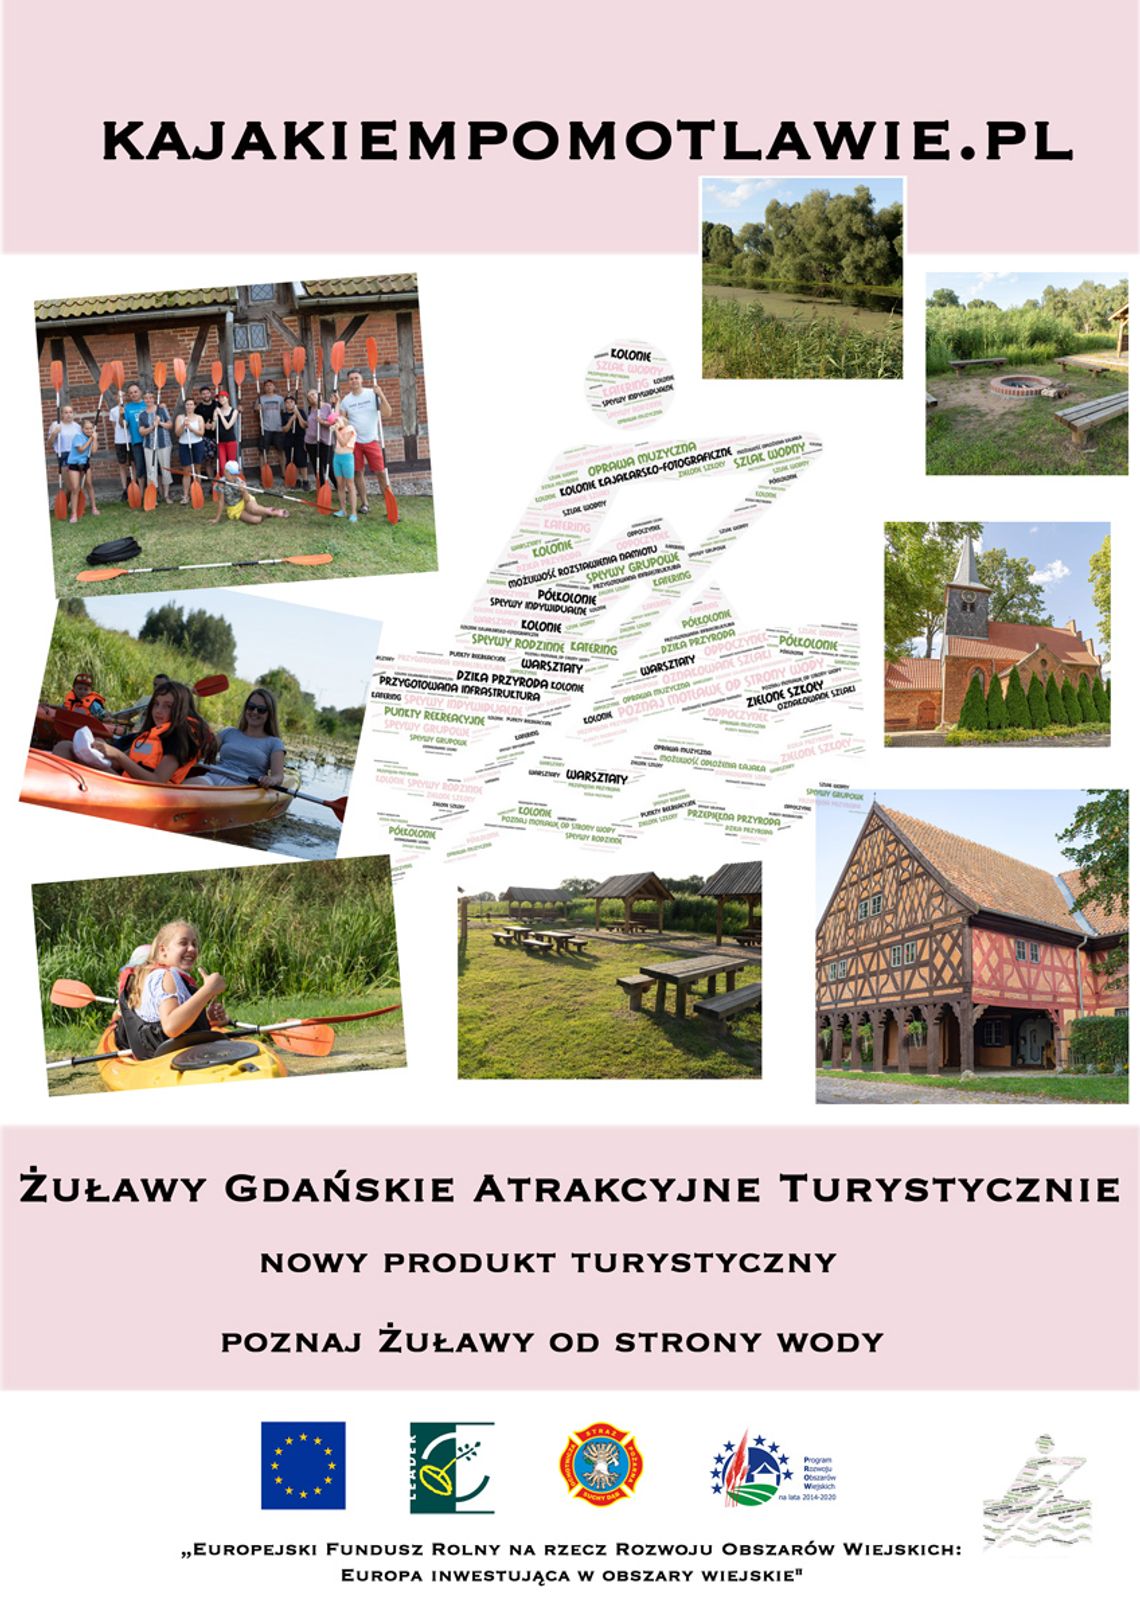 Żuławy Gdańskie Atrakcyjne Turystycznie  – Nowy produkt turystyczny  - poznaj Żuławy od strony wody